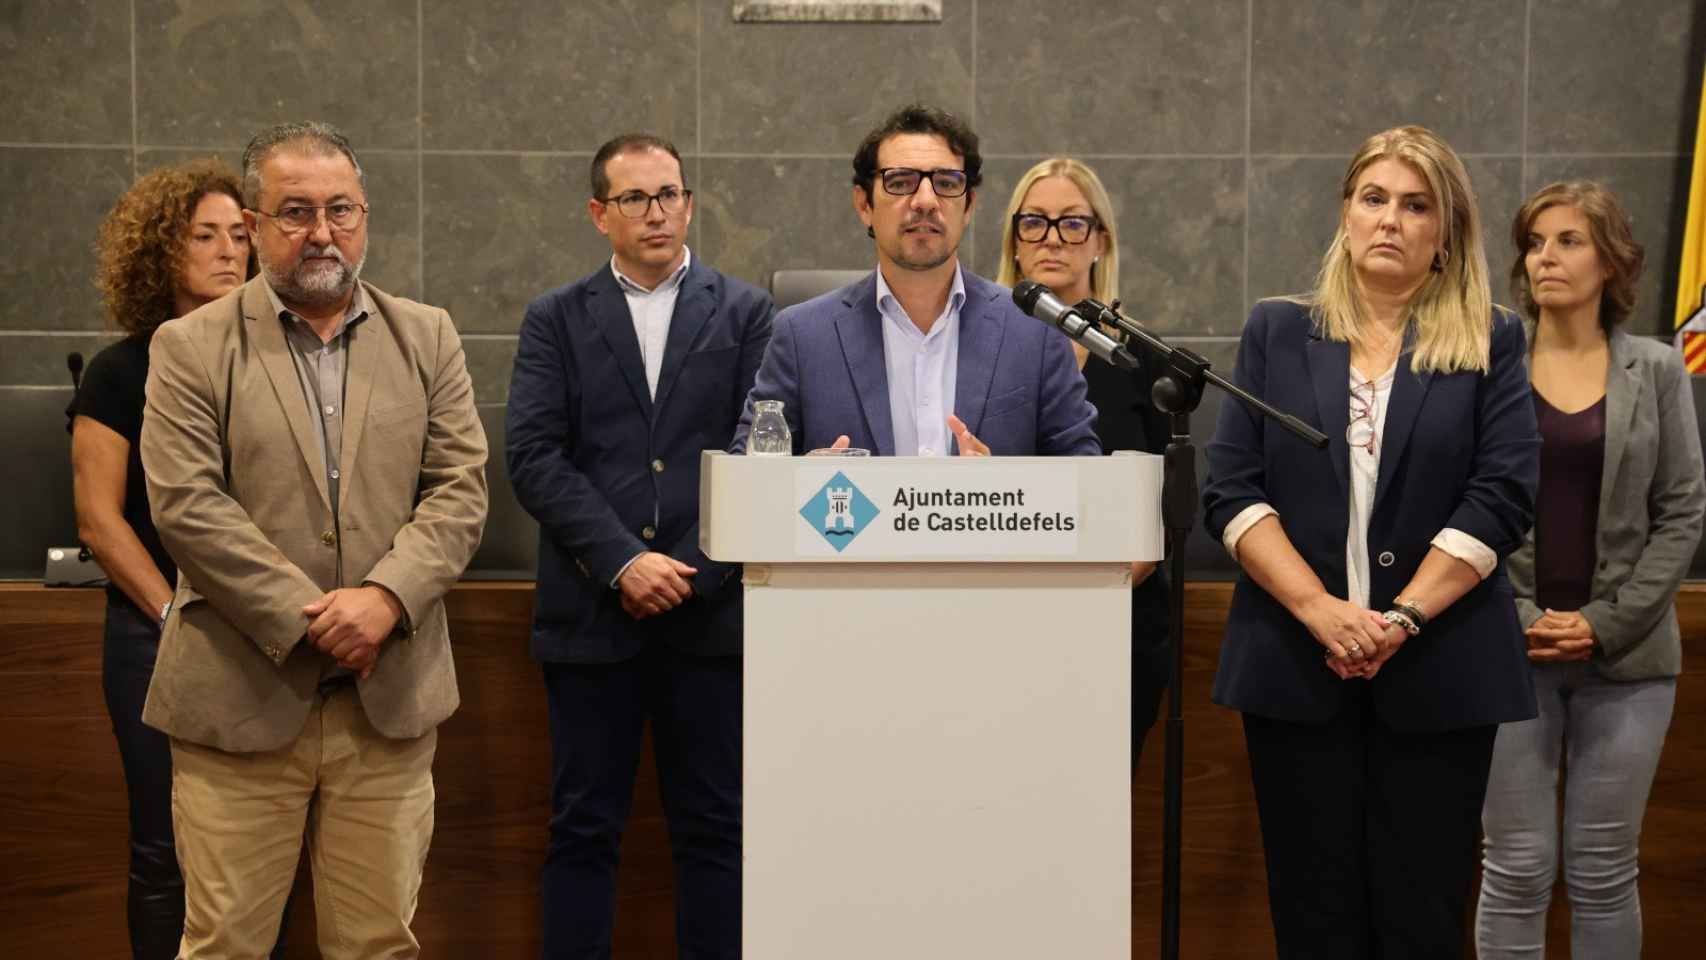 El alcalde de Castelldefels Manu Reyes, acompañado por sus concejales del equipo de gobierno